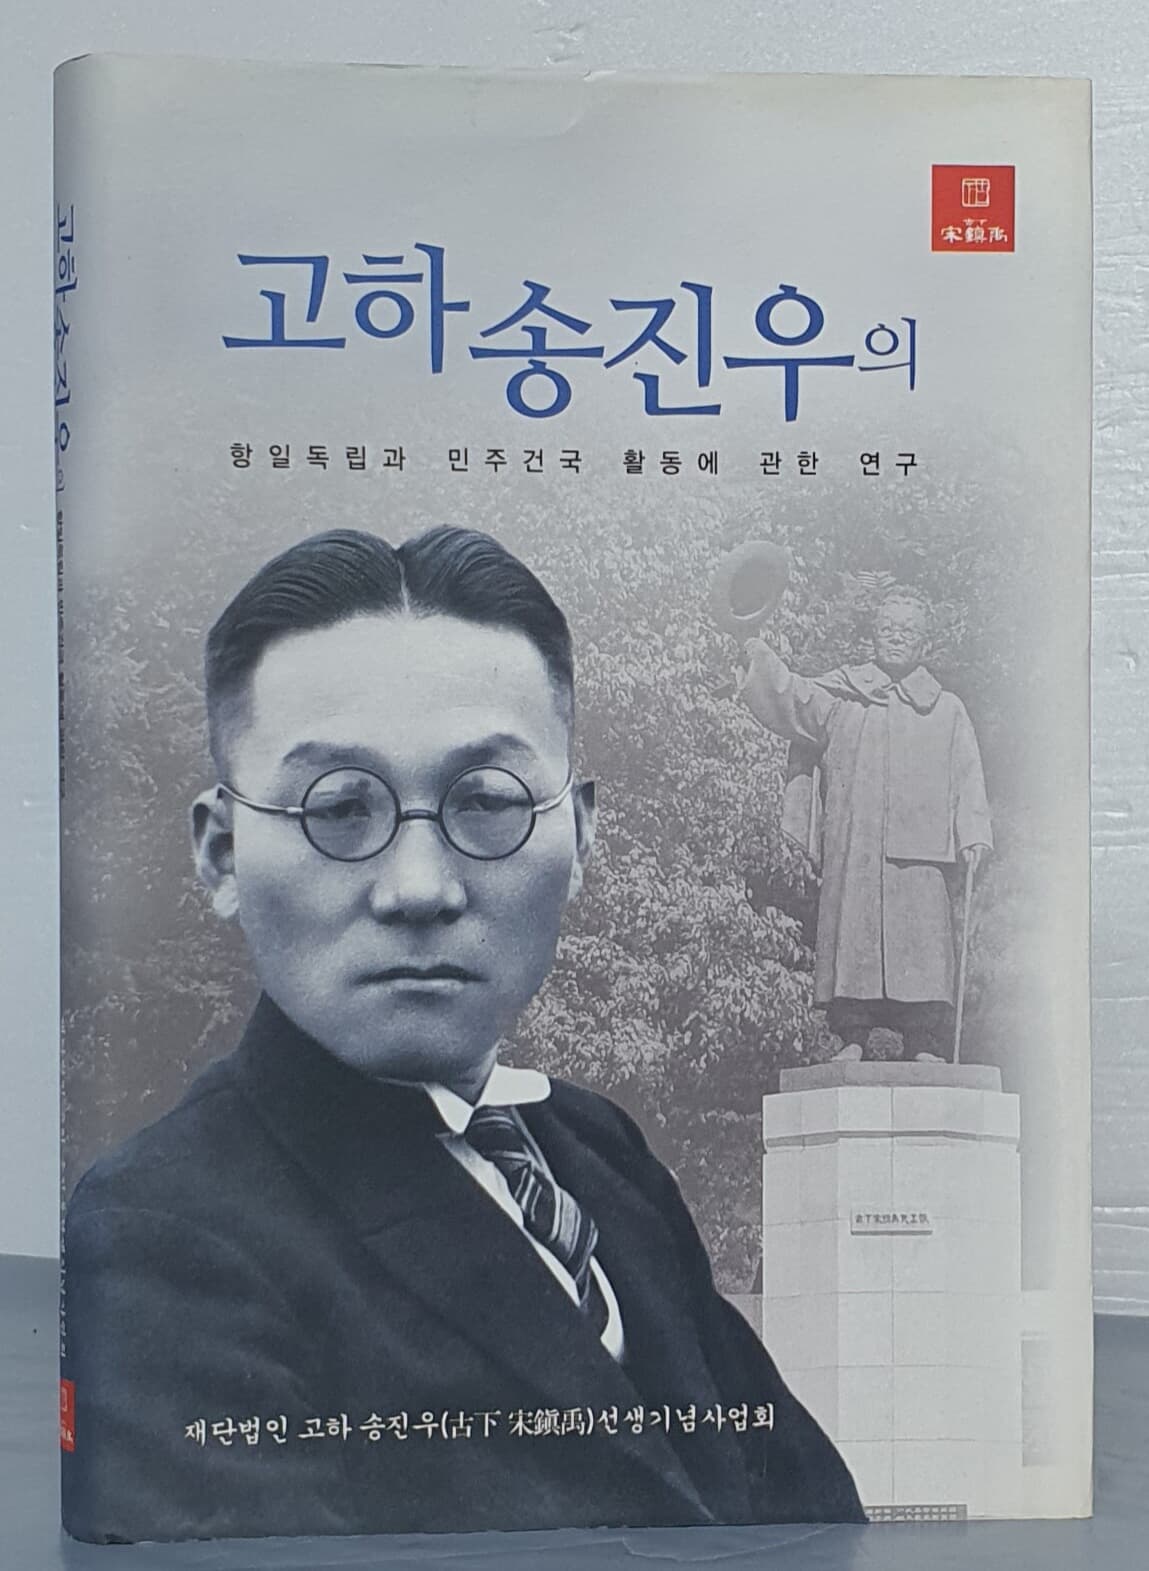 고하 송진우의 항일독립과 민주건국 활동에 관한 연구